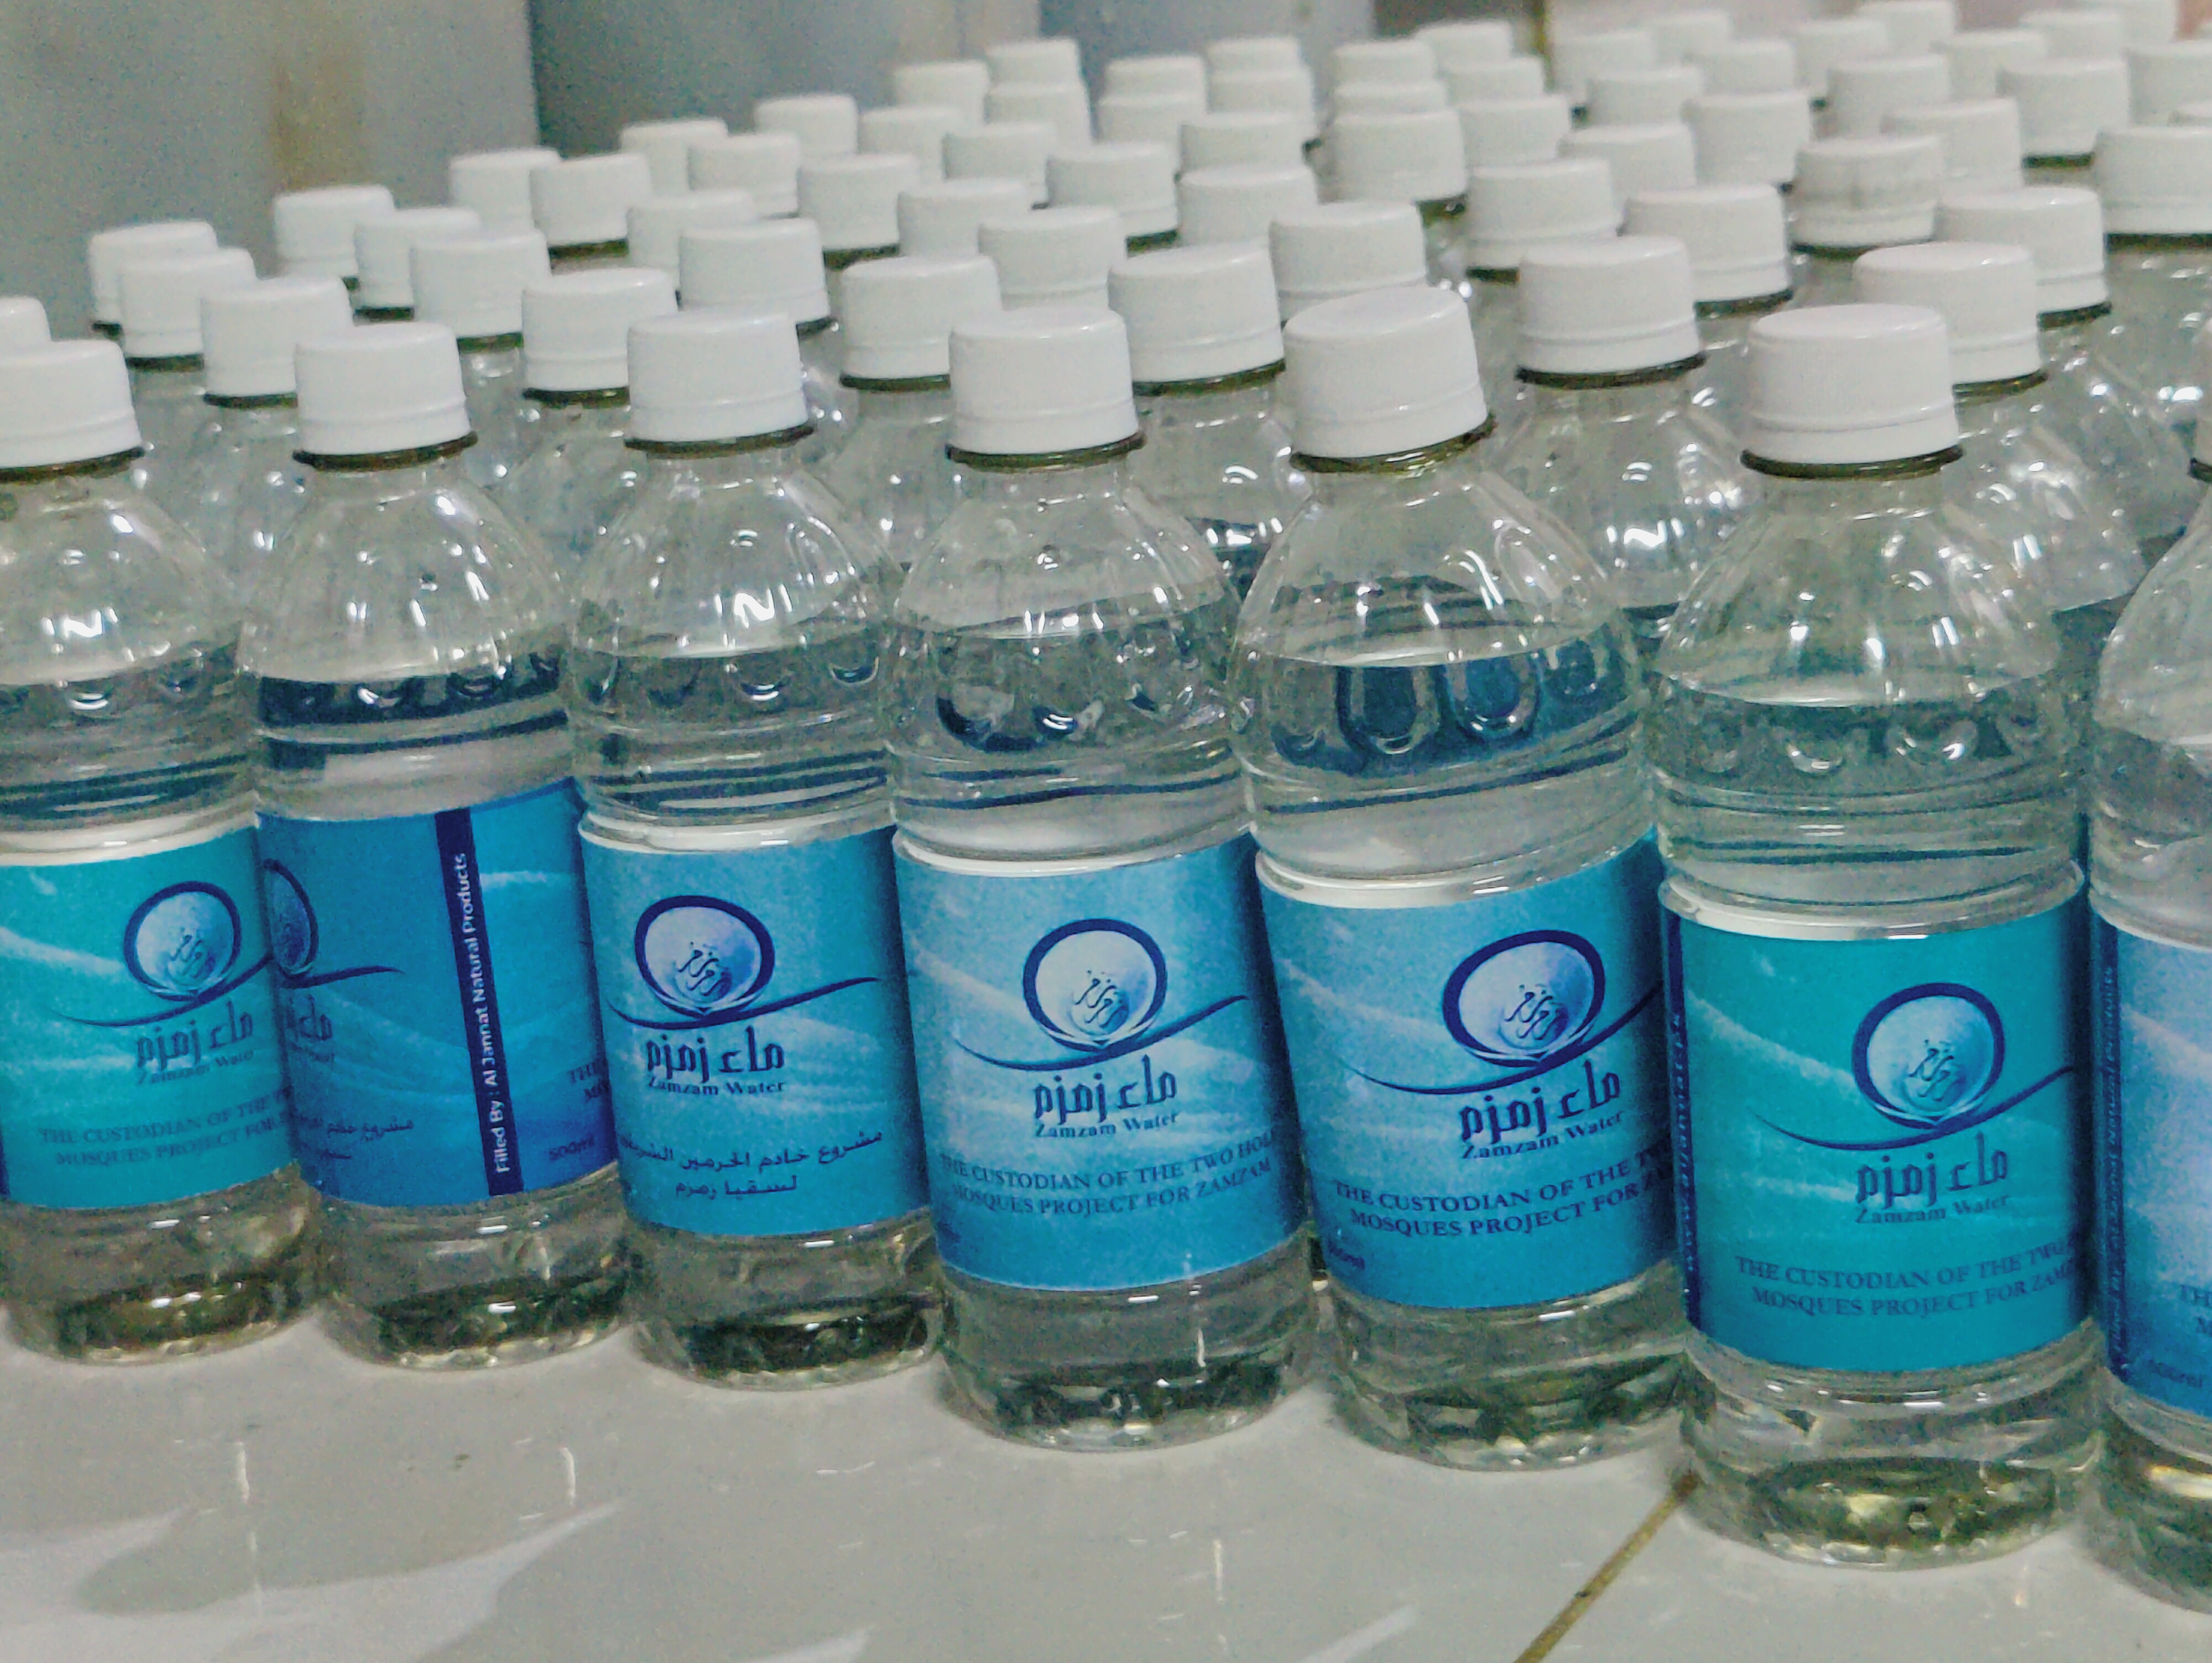 Pure Zamzam Water 500ml (Zamzam Small Bottles - 100% Orignal)/